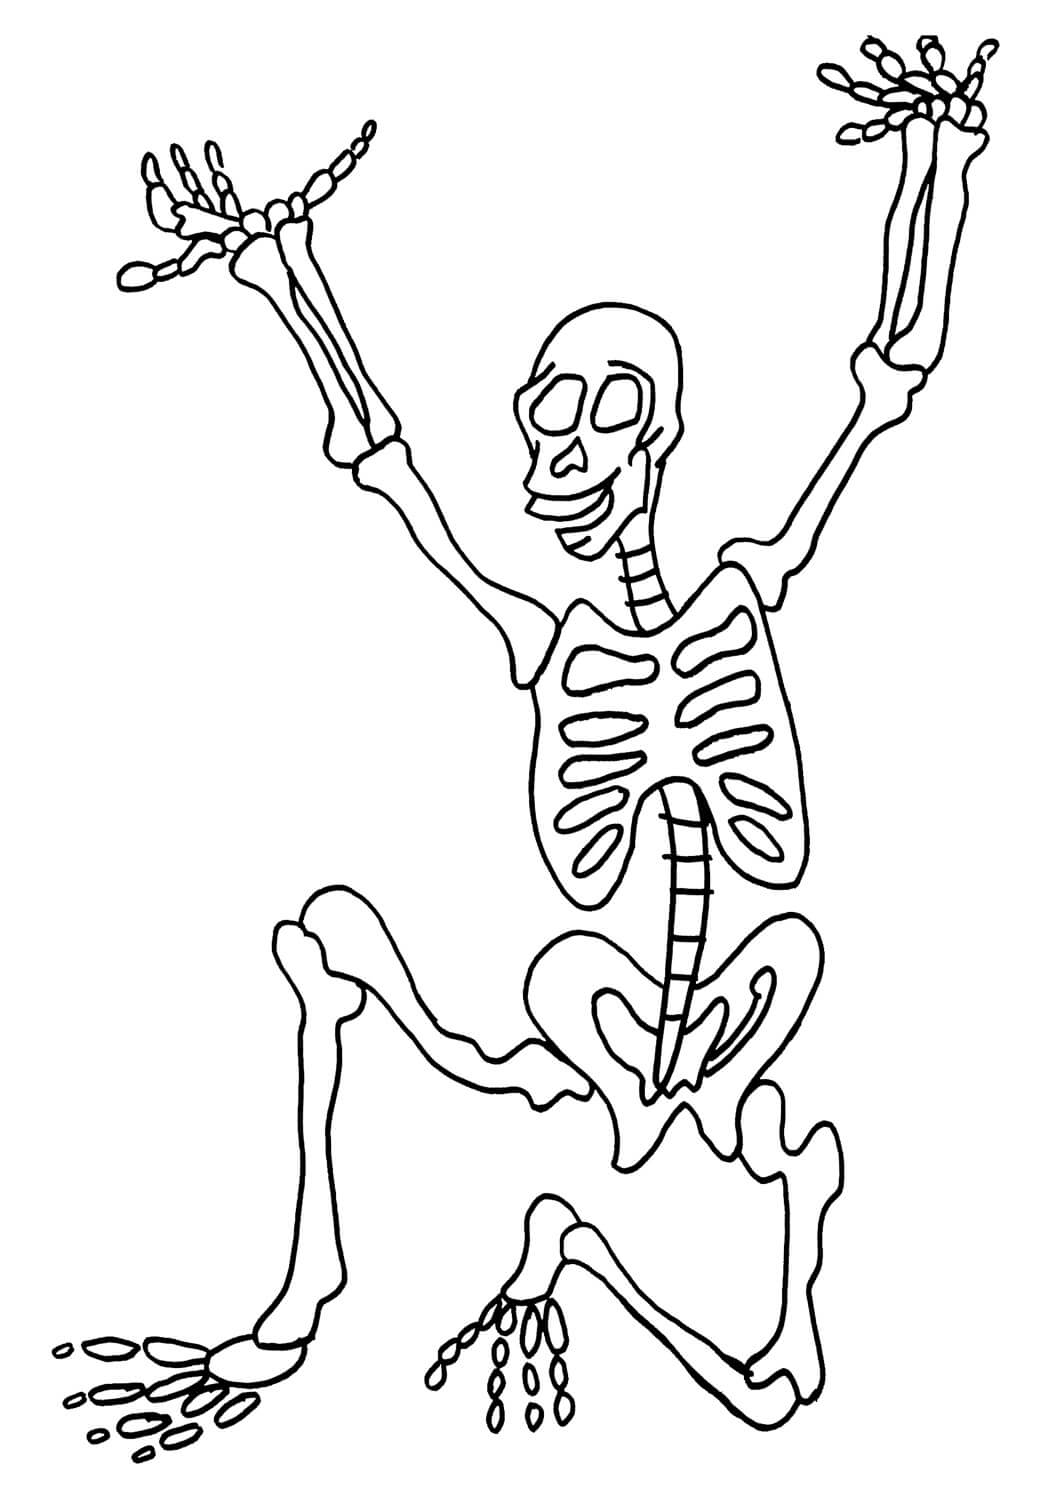 Dibujos de Bonito Esqueleto para colorear